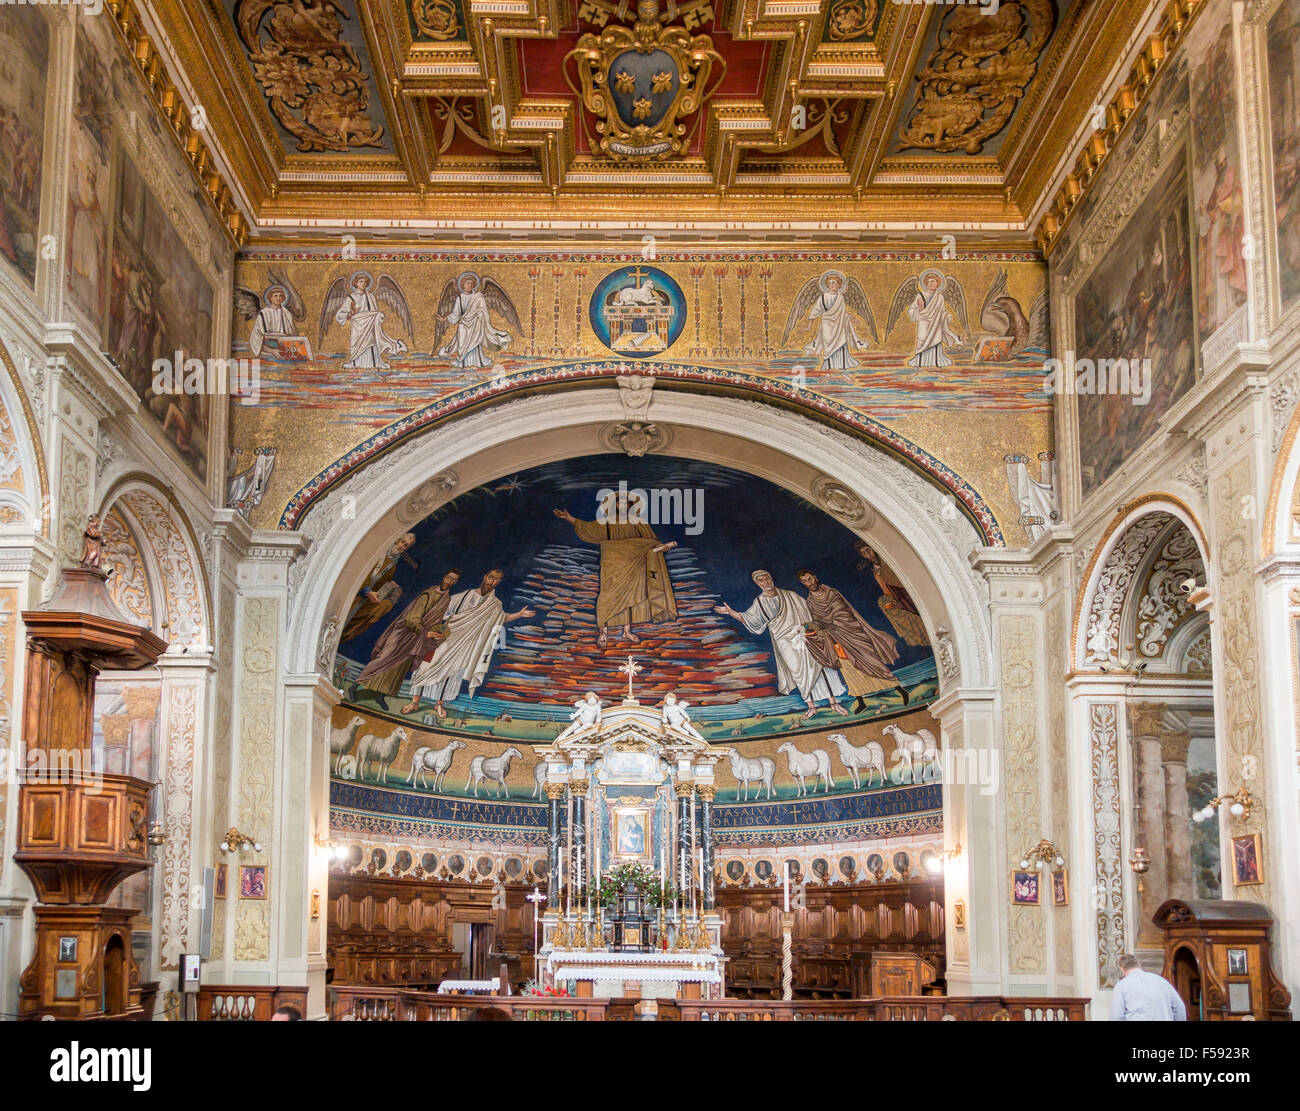 Cosma e damiano, église, Rome, Latium, Italie Banque D'Images